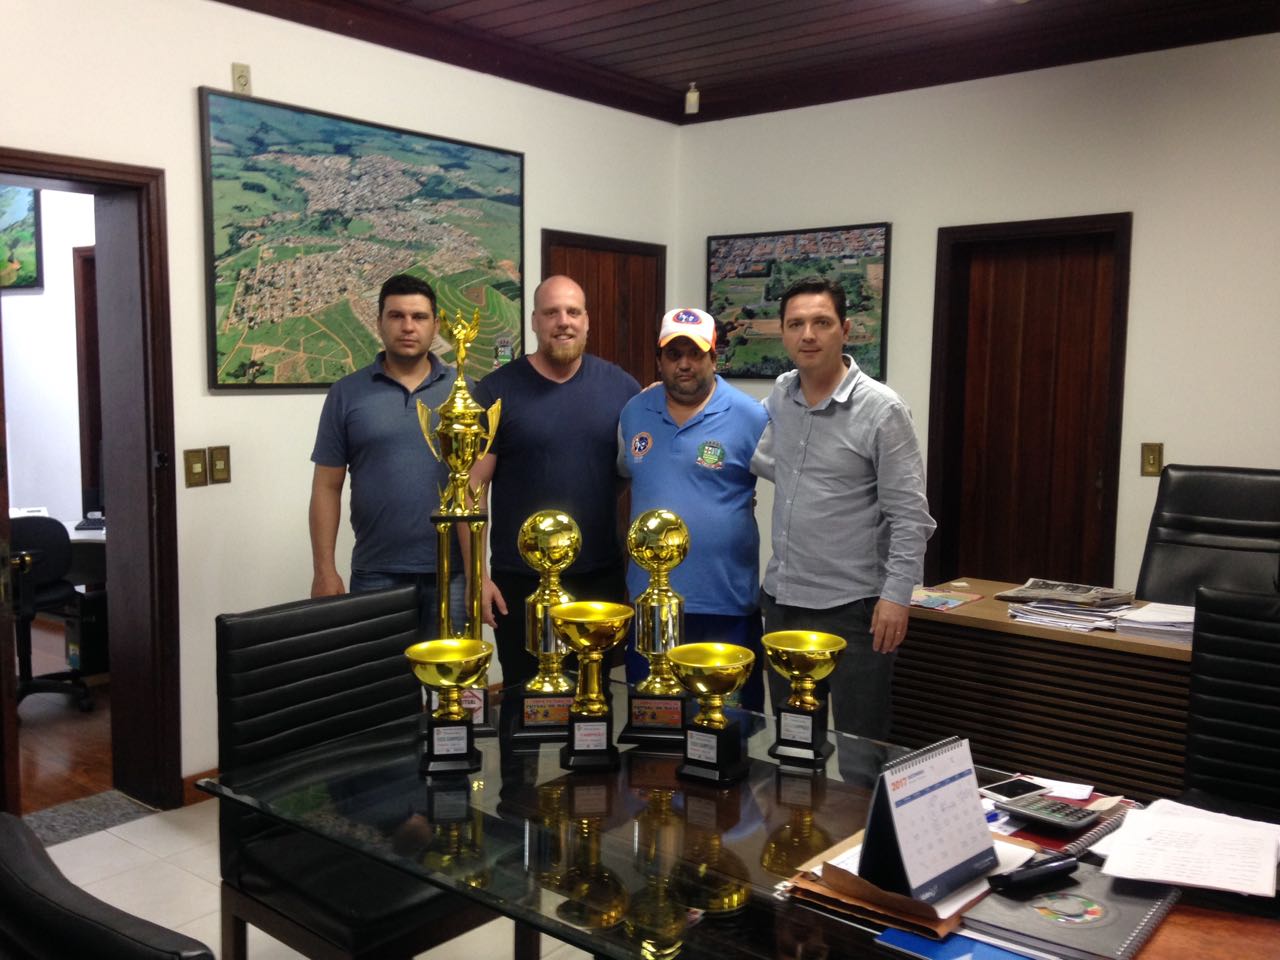 Ronaldo, Presidente da Câmara; Haroldo, Diretor de Esportes; Cristiano, Técnico de Futsal e Prefeito Thiago